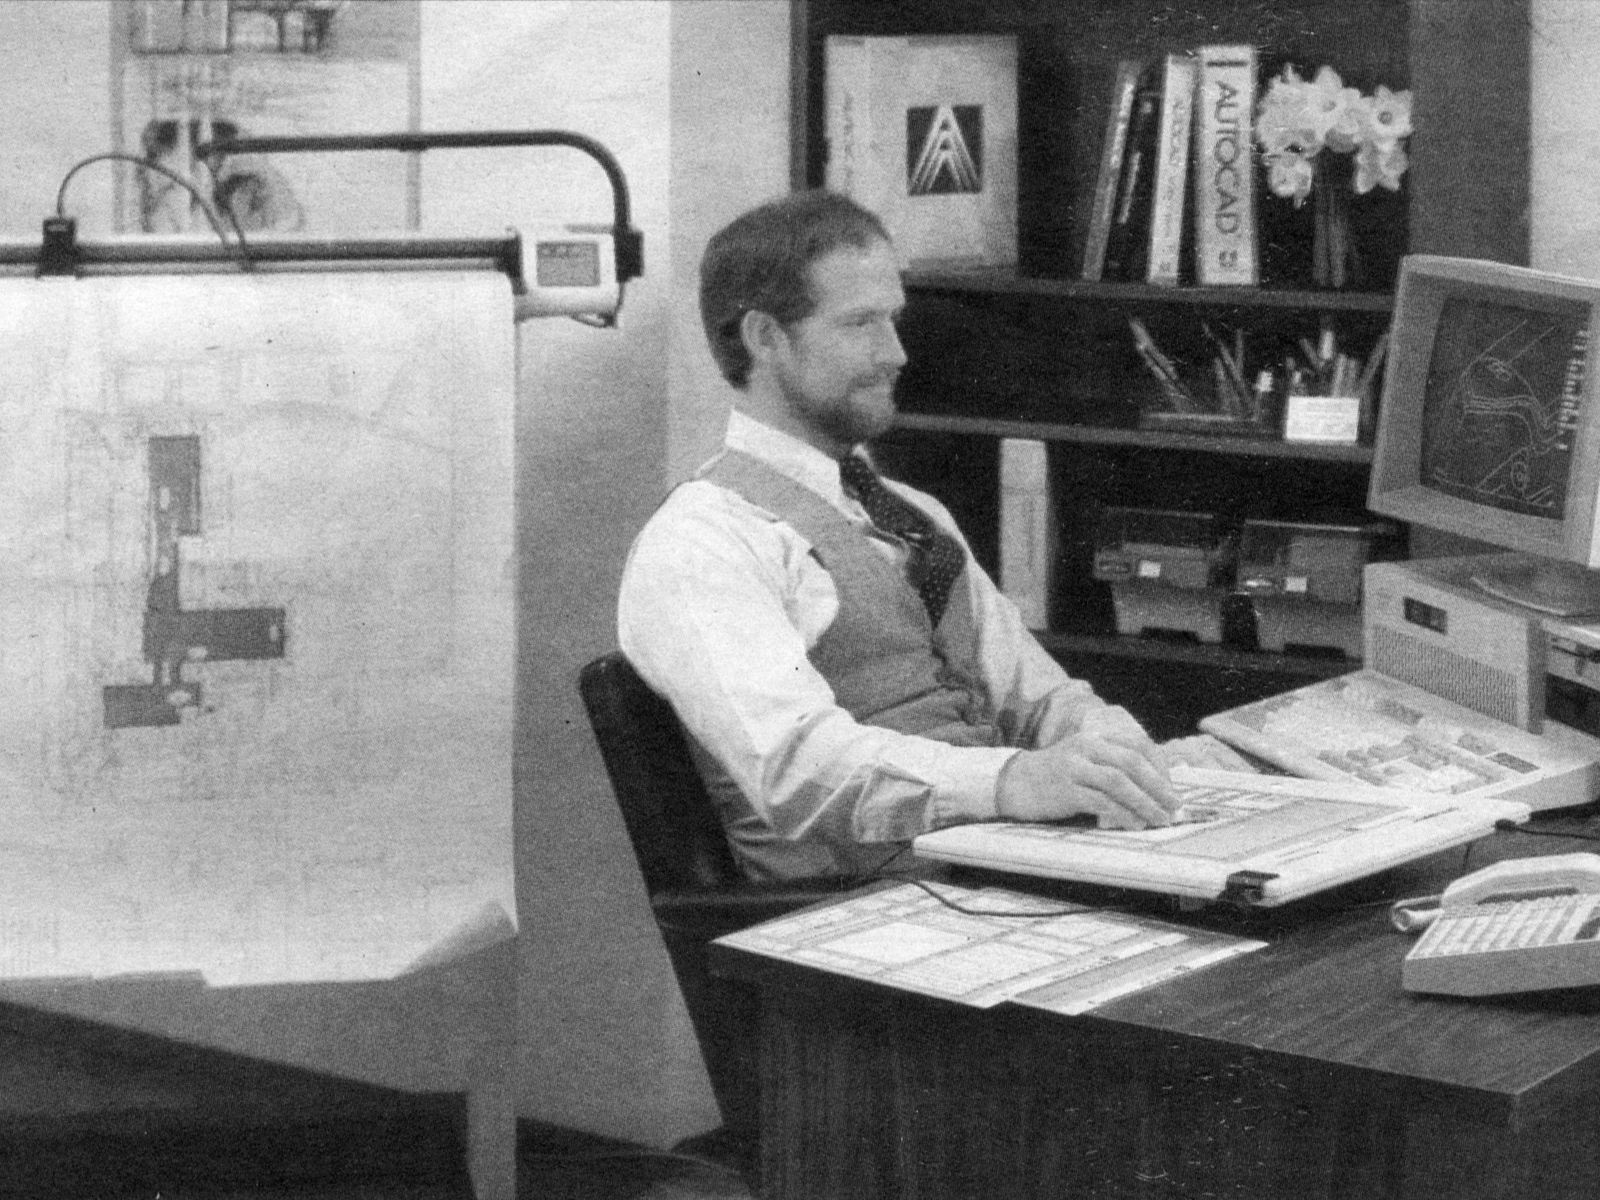 Mann sitter og jobber på en datamaskin i 1987. Svart hvitt foto.